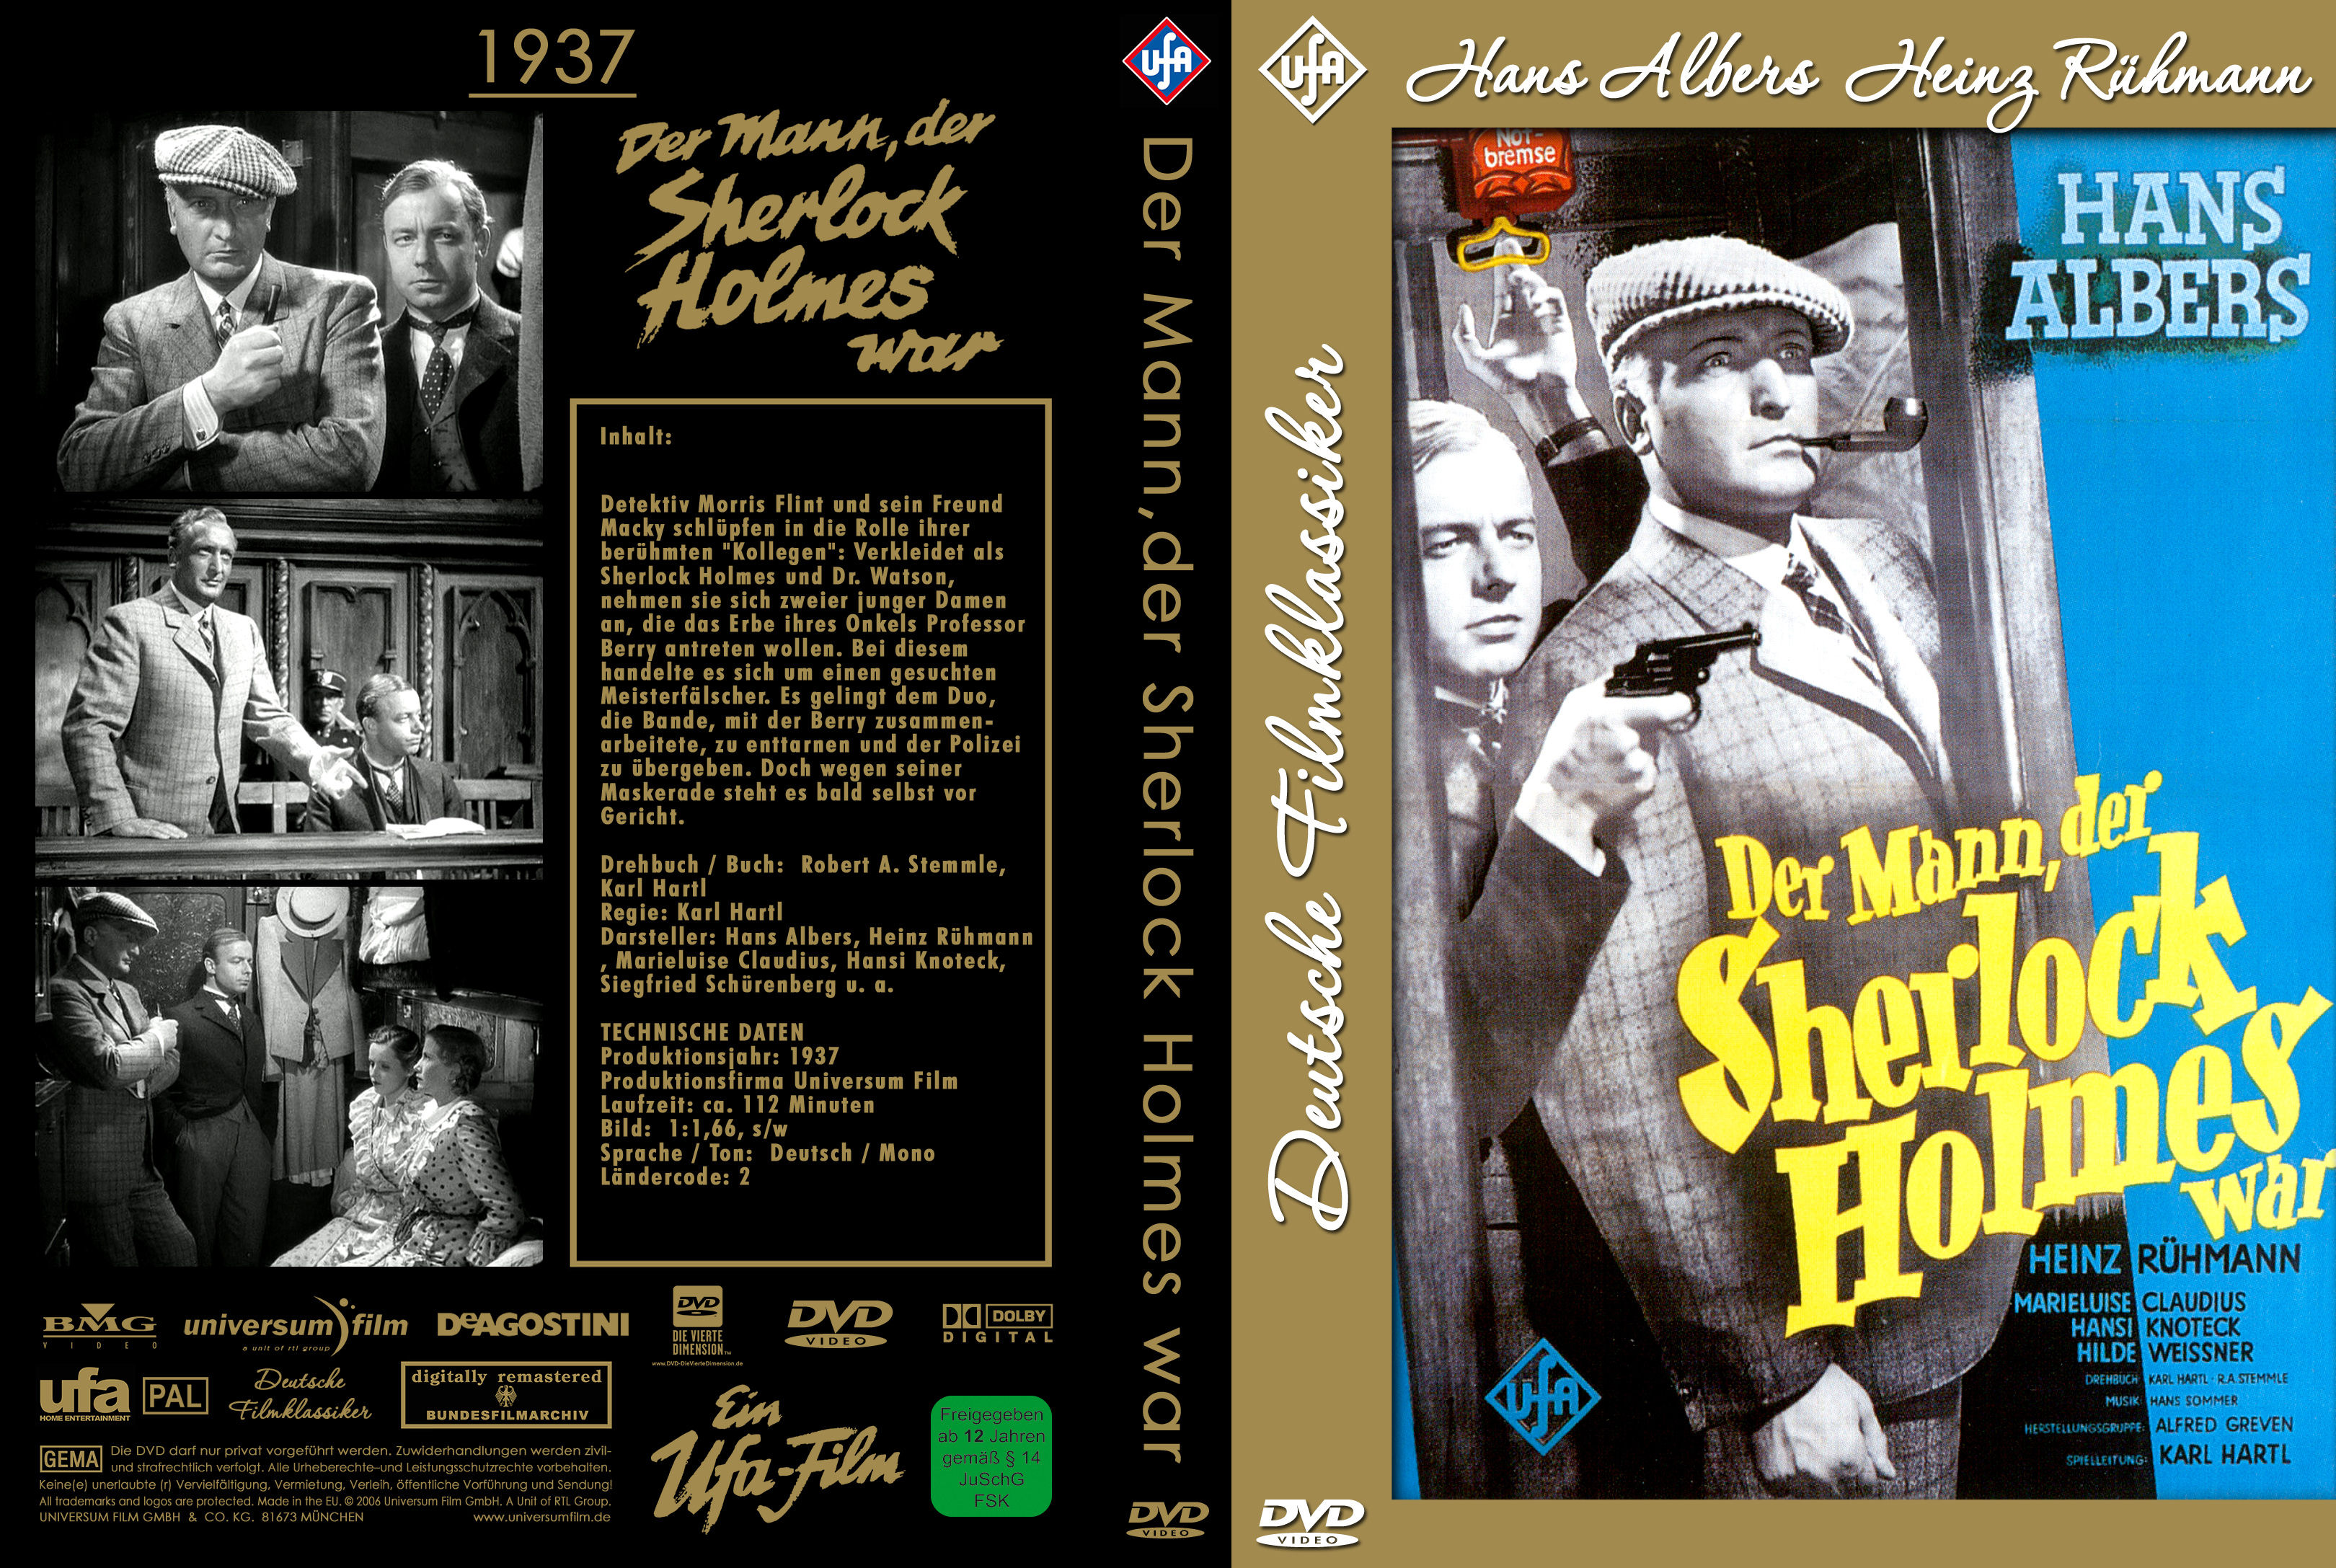 Der Mann, der Sherlock Holmes war 1937 Heinz Ruehmann